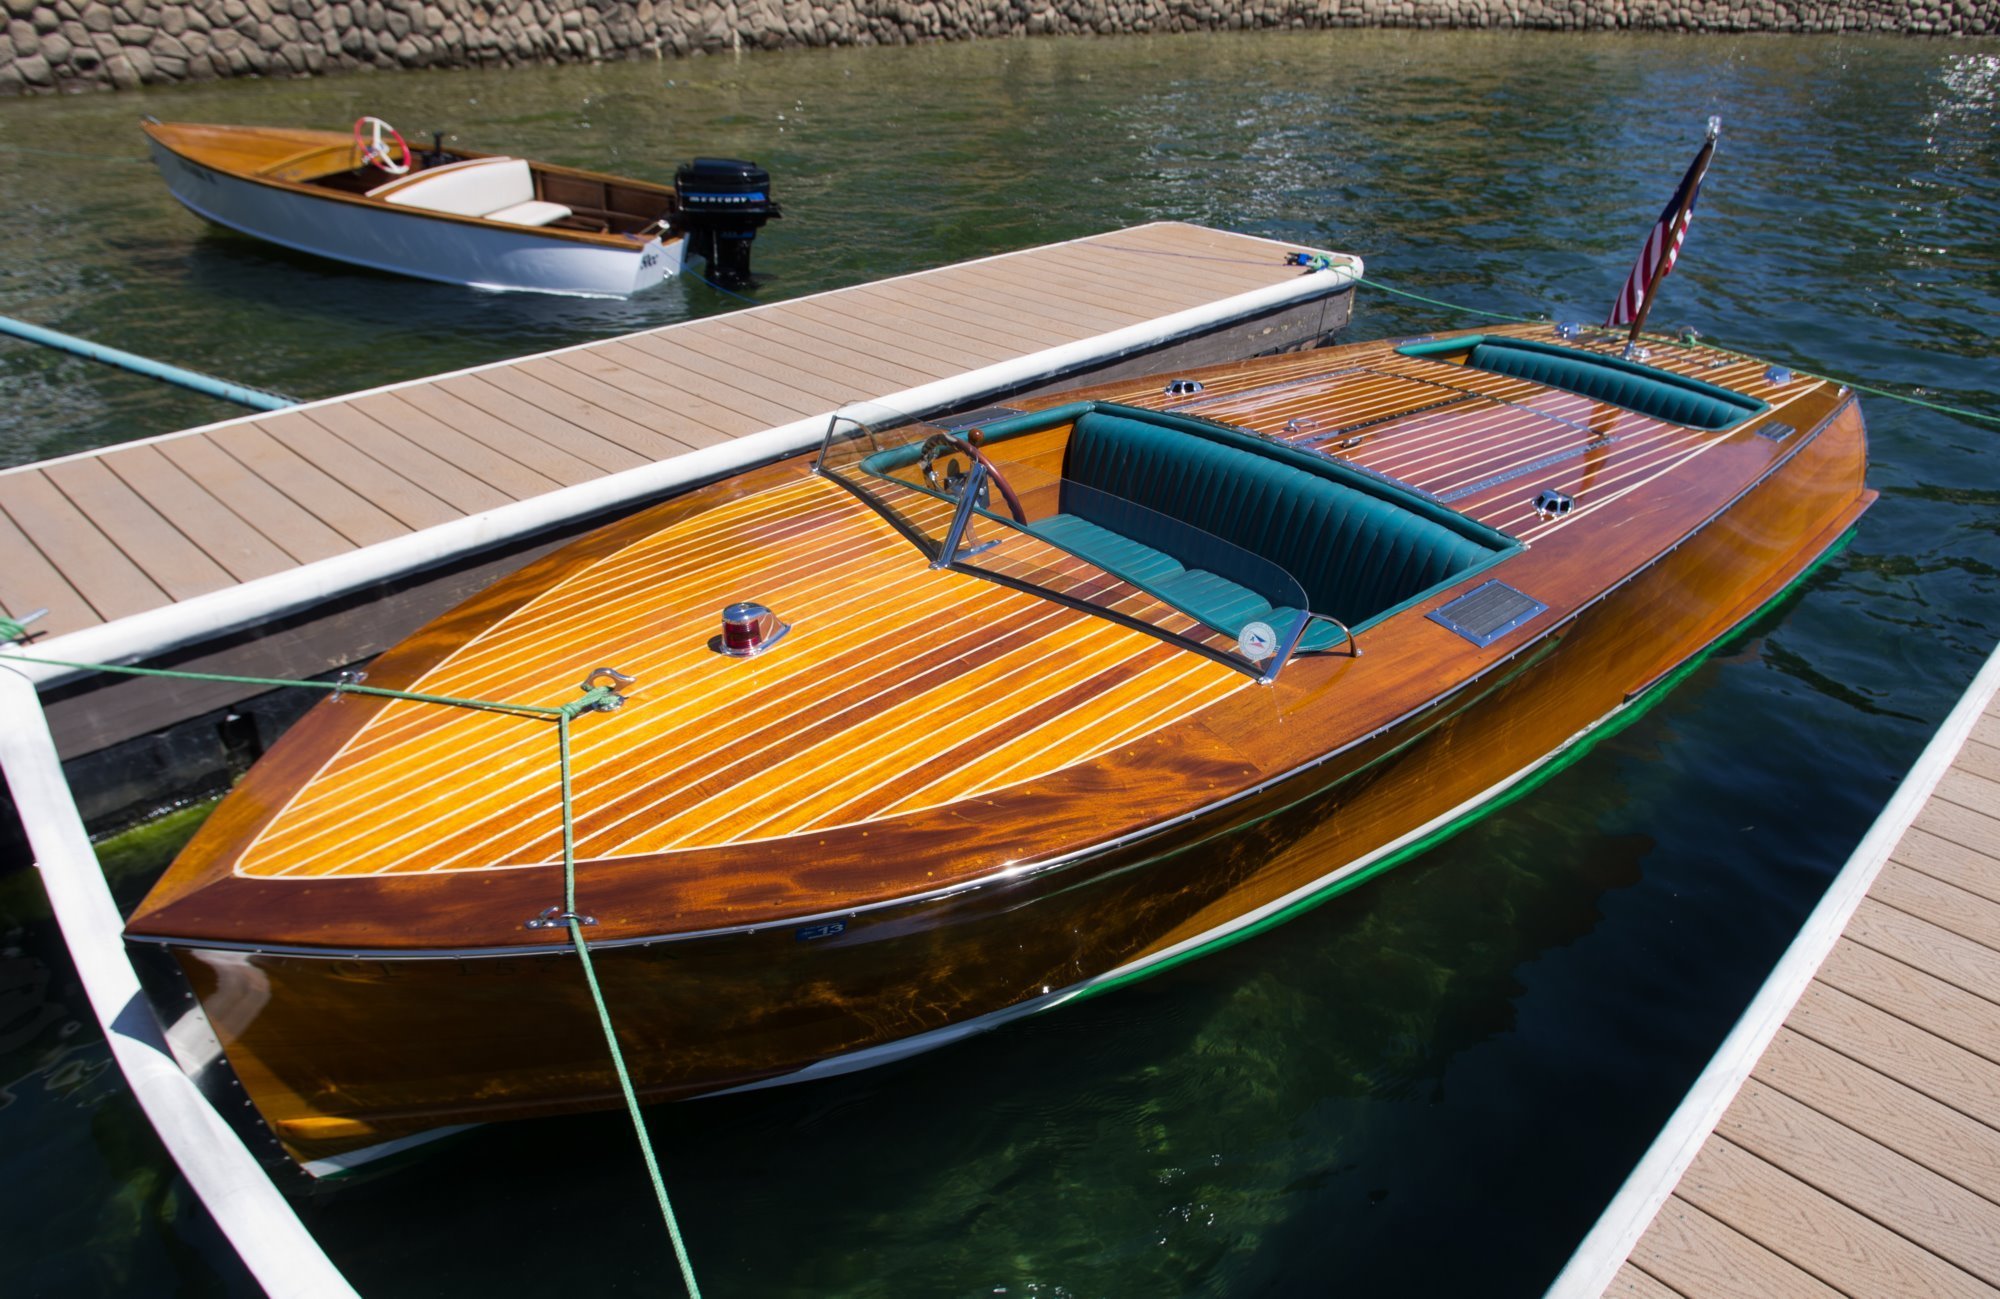 antique & classic wooden boats - pentaxforums.com